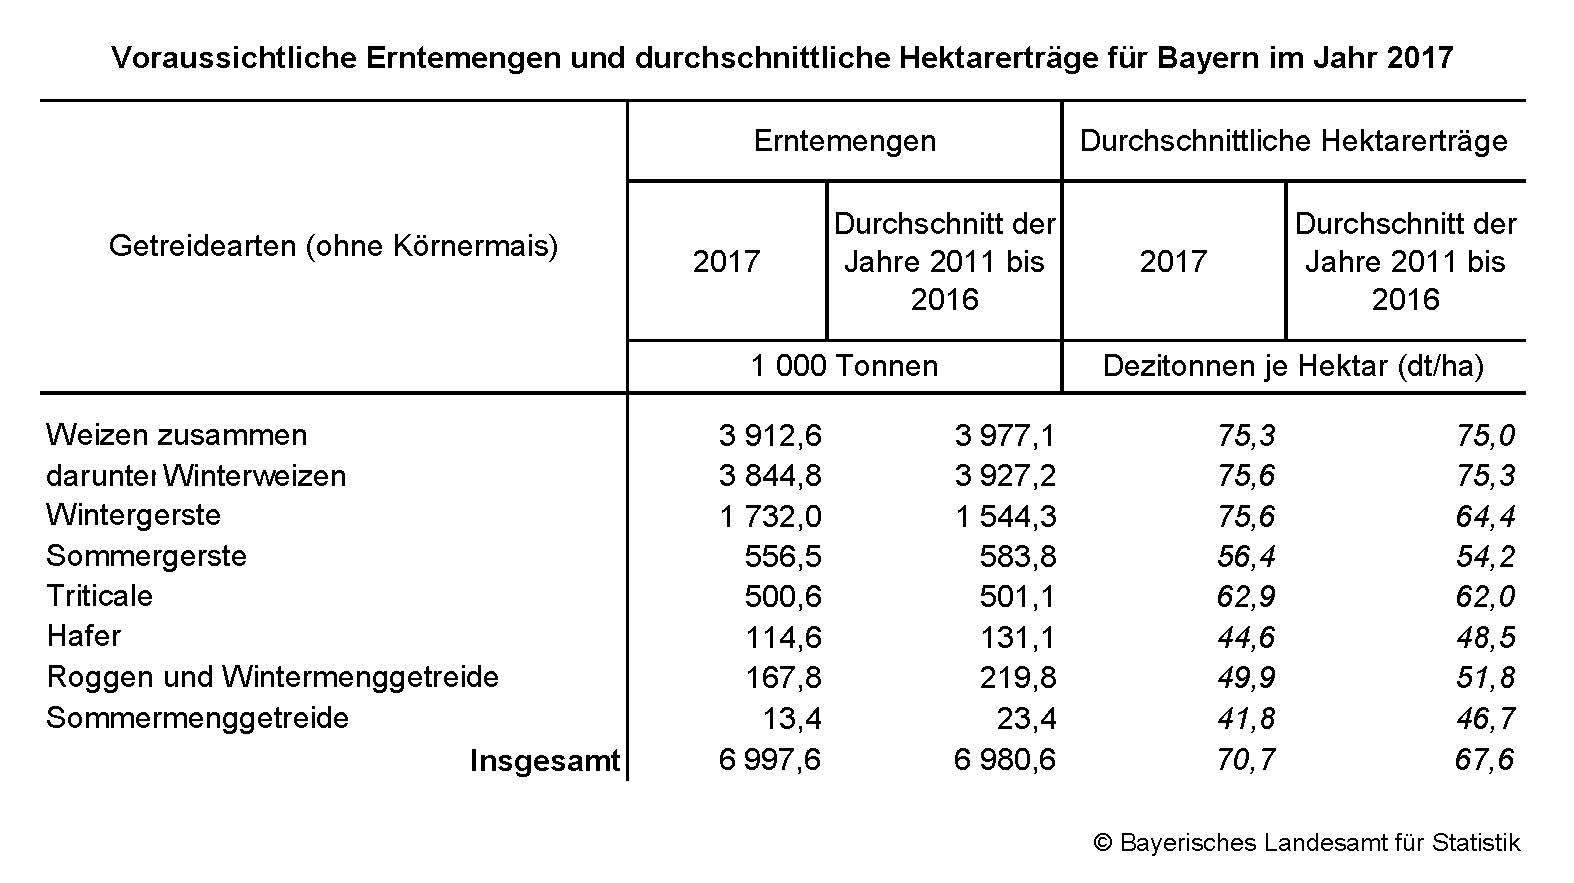 Voraussichtliche Ernstemengen und durchschnittliche Hektarerträge für Bayern im Jahr 2017